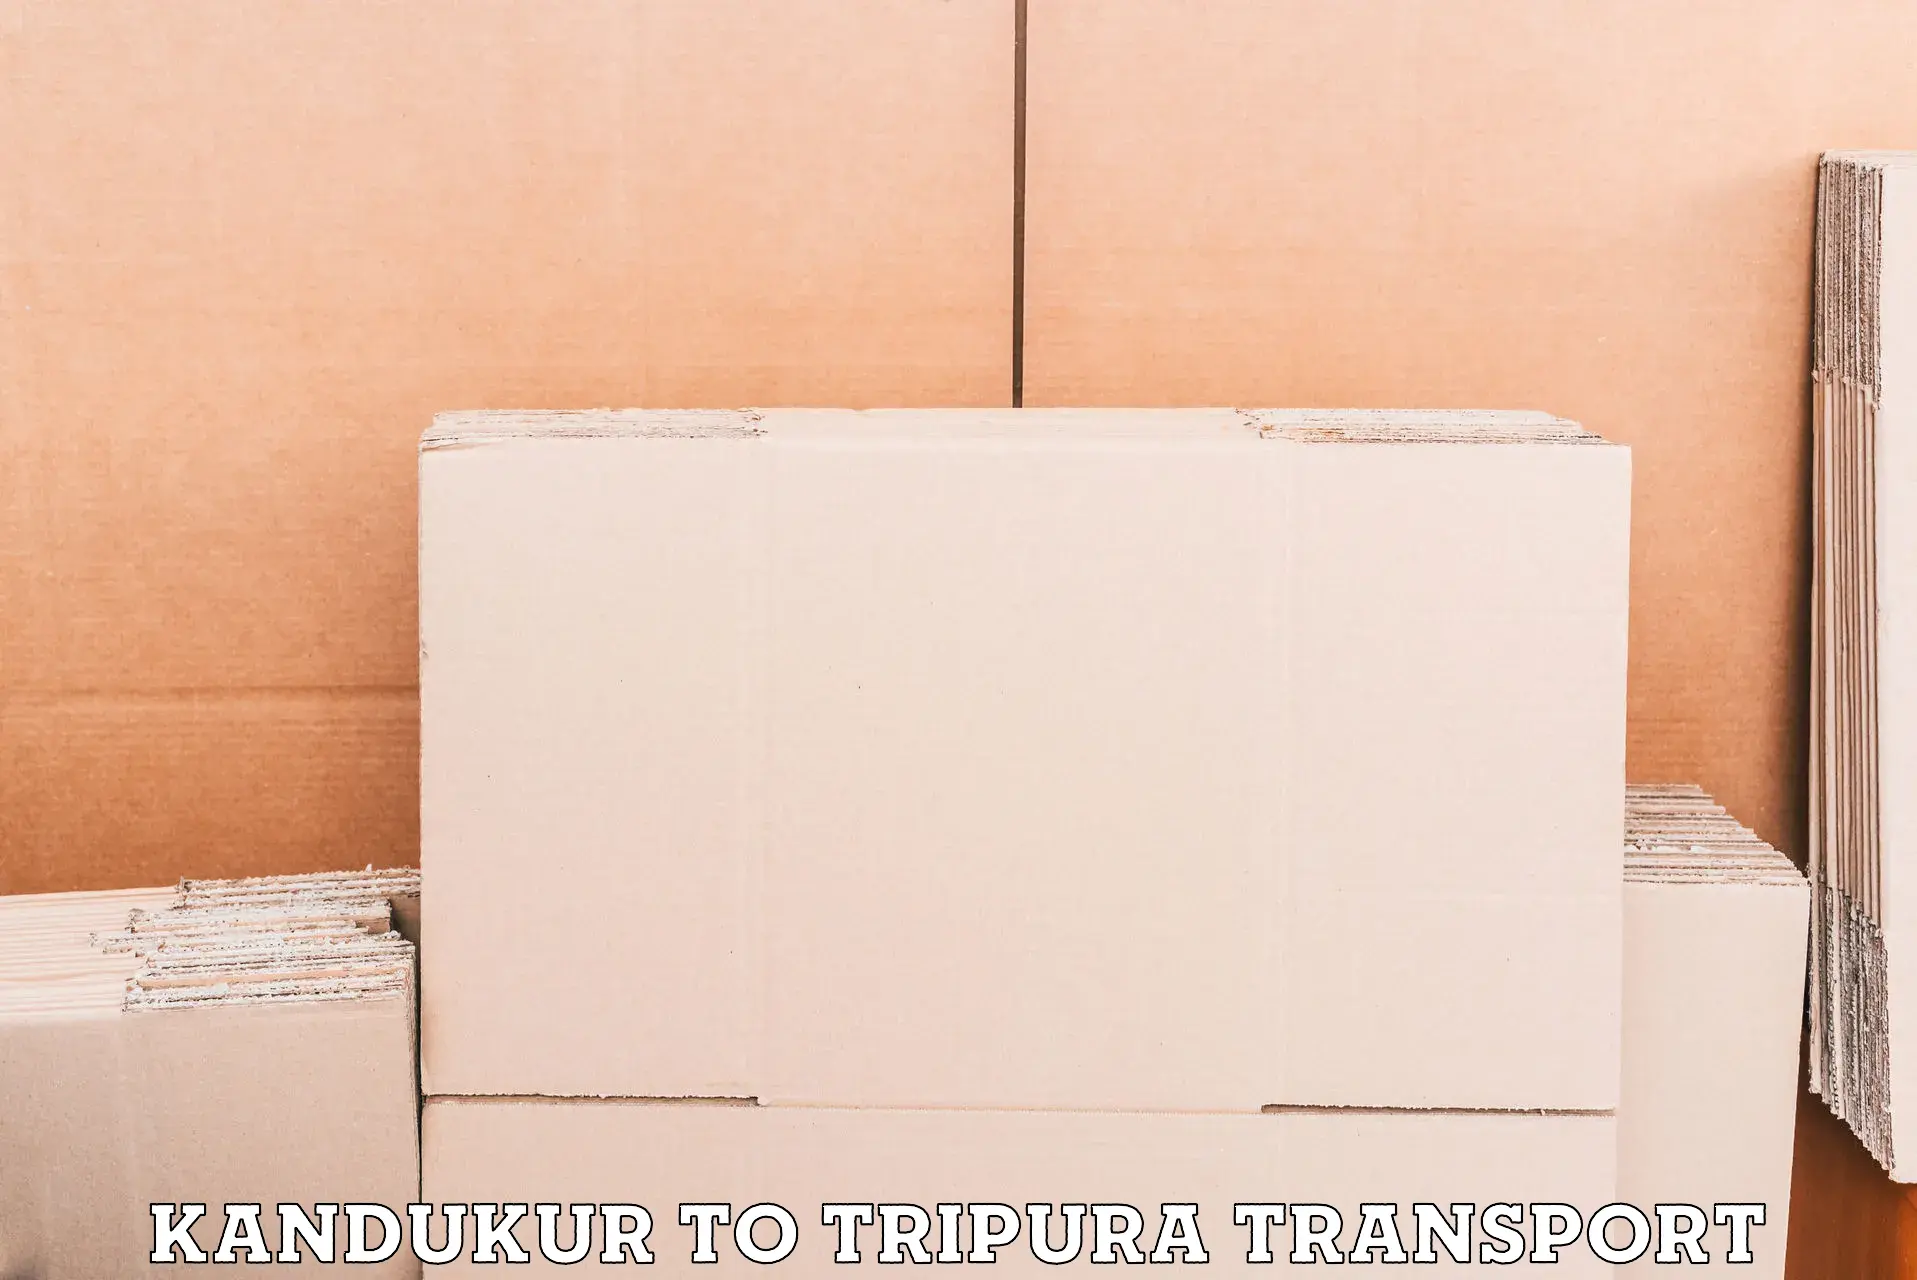 Online transport booking Kandukur to Tripura